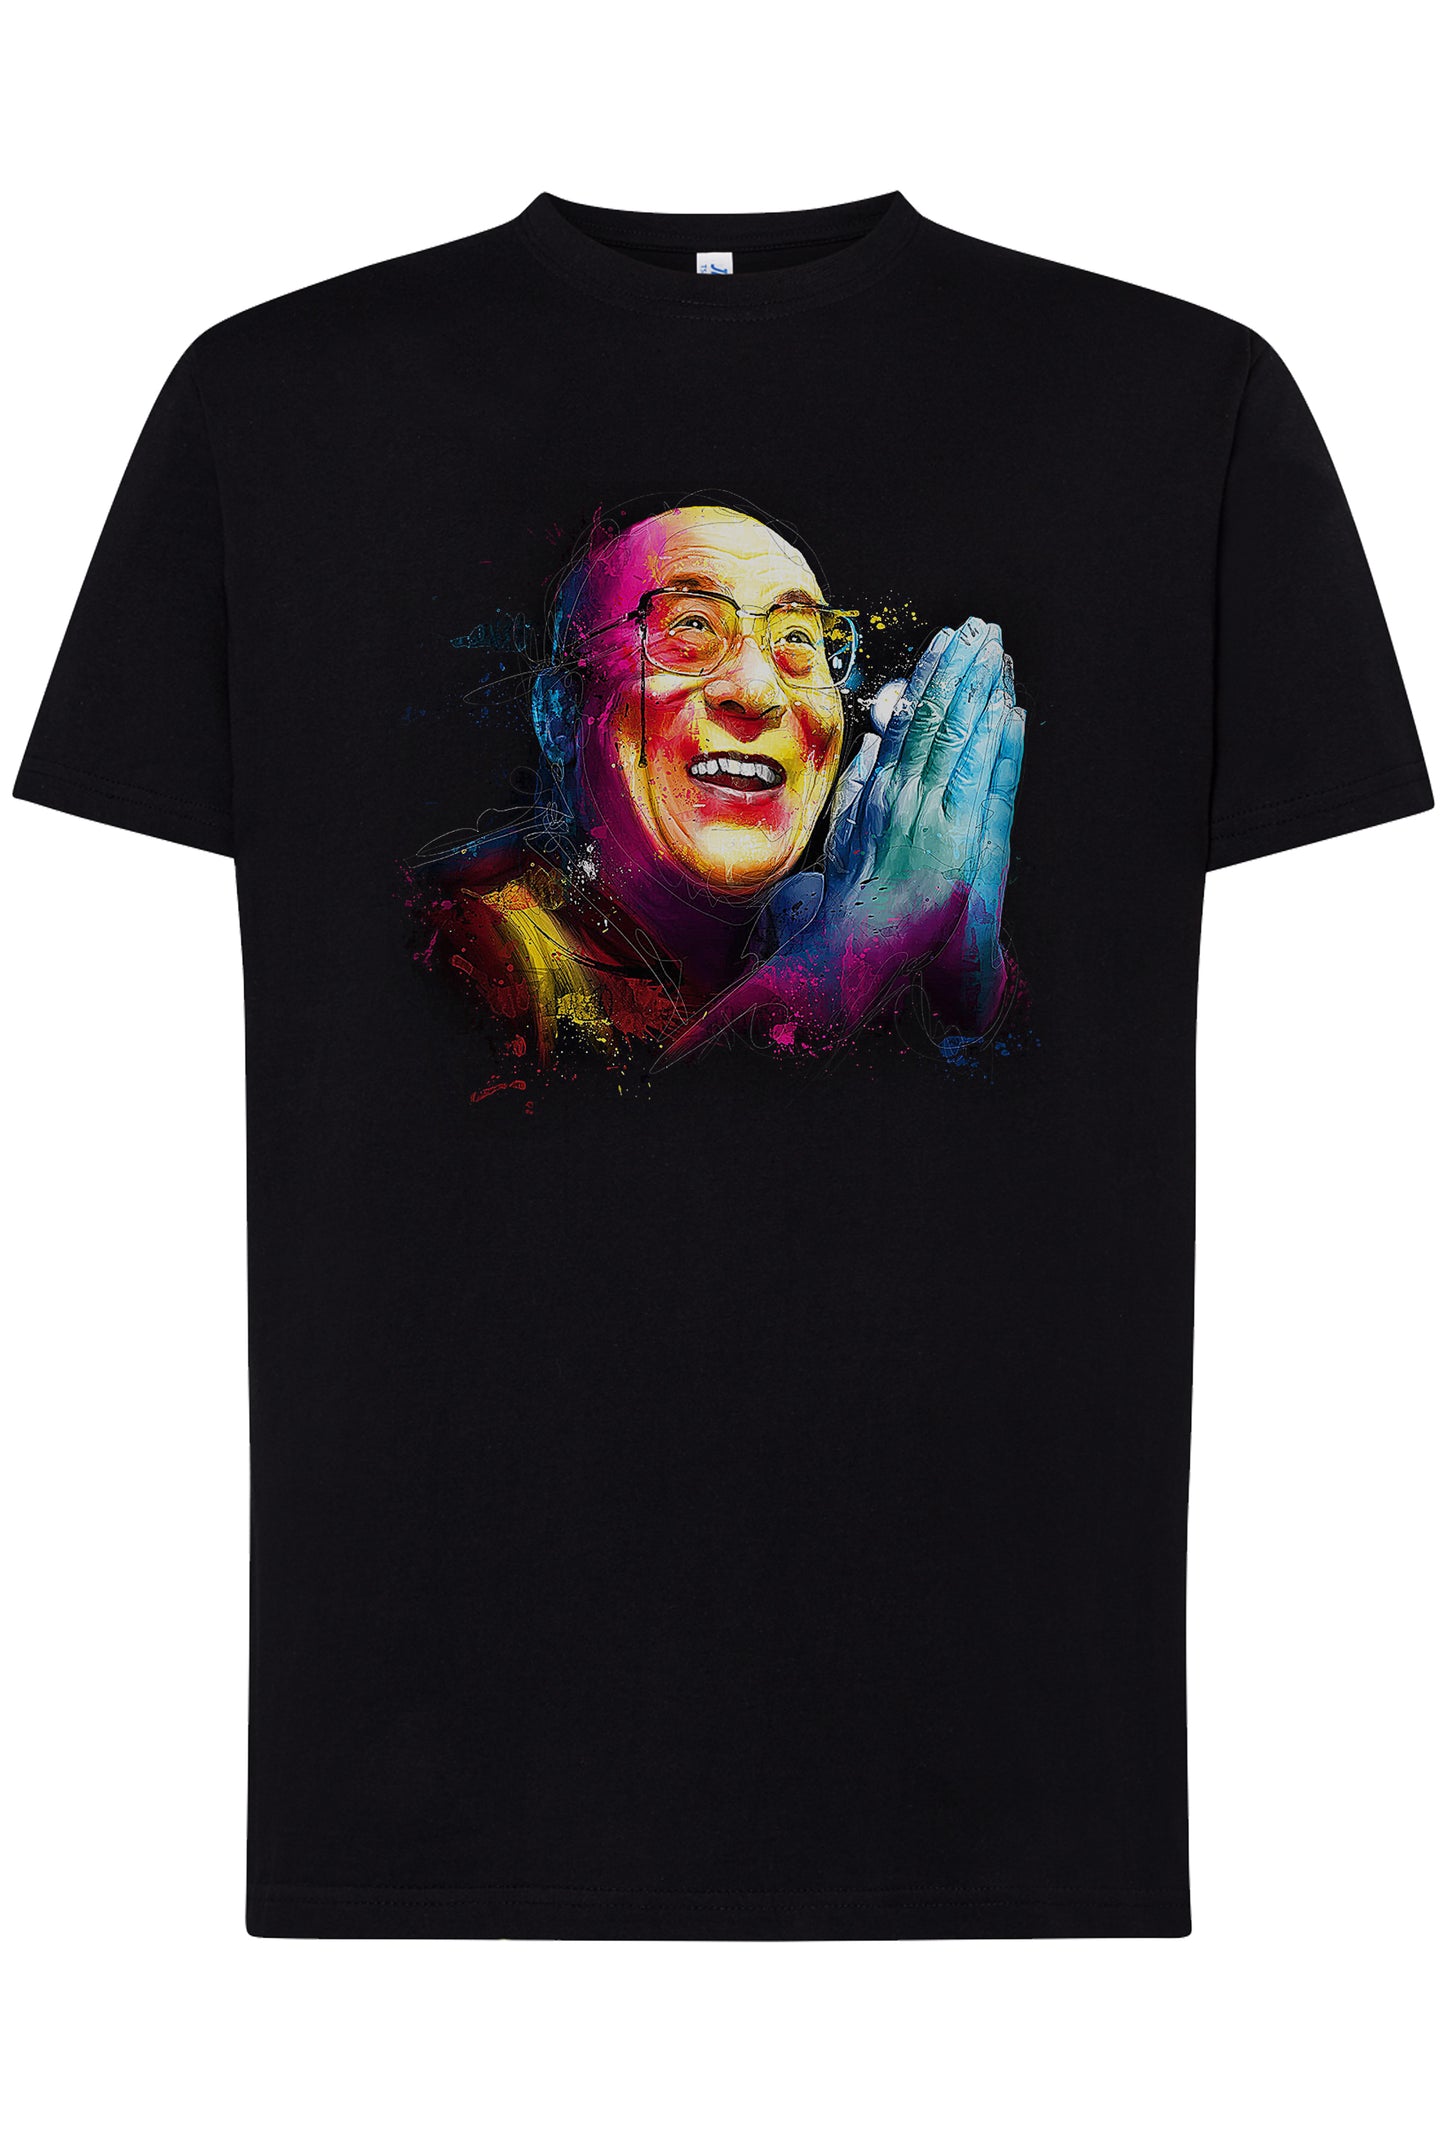 Dalai Lama stilizzato Color The legend 18-20-23 T-shirt Urban Men Uomo 100% Cotone Pettinato JK